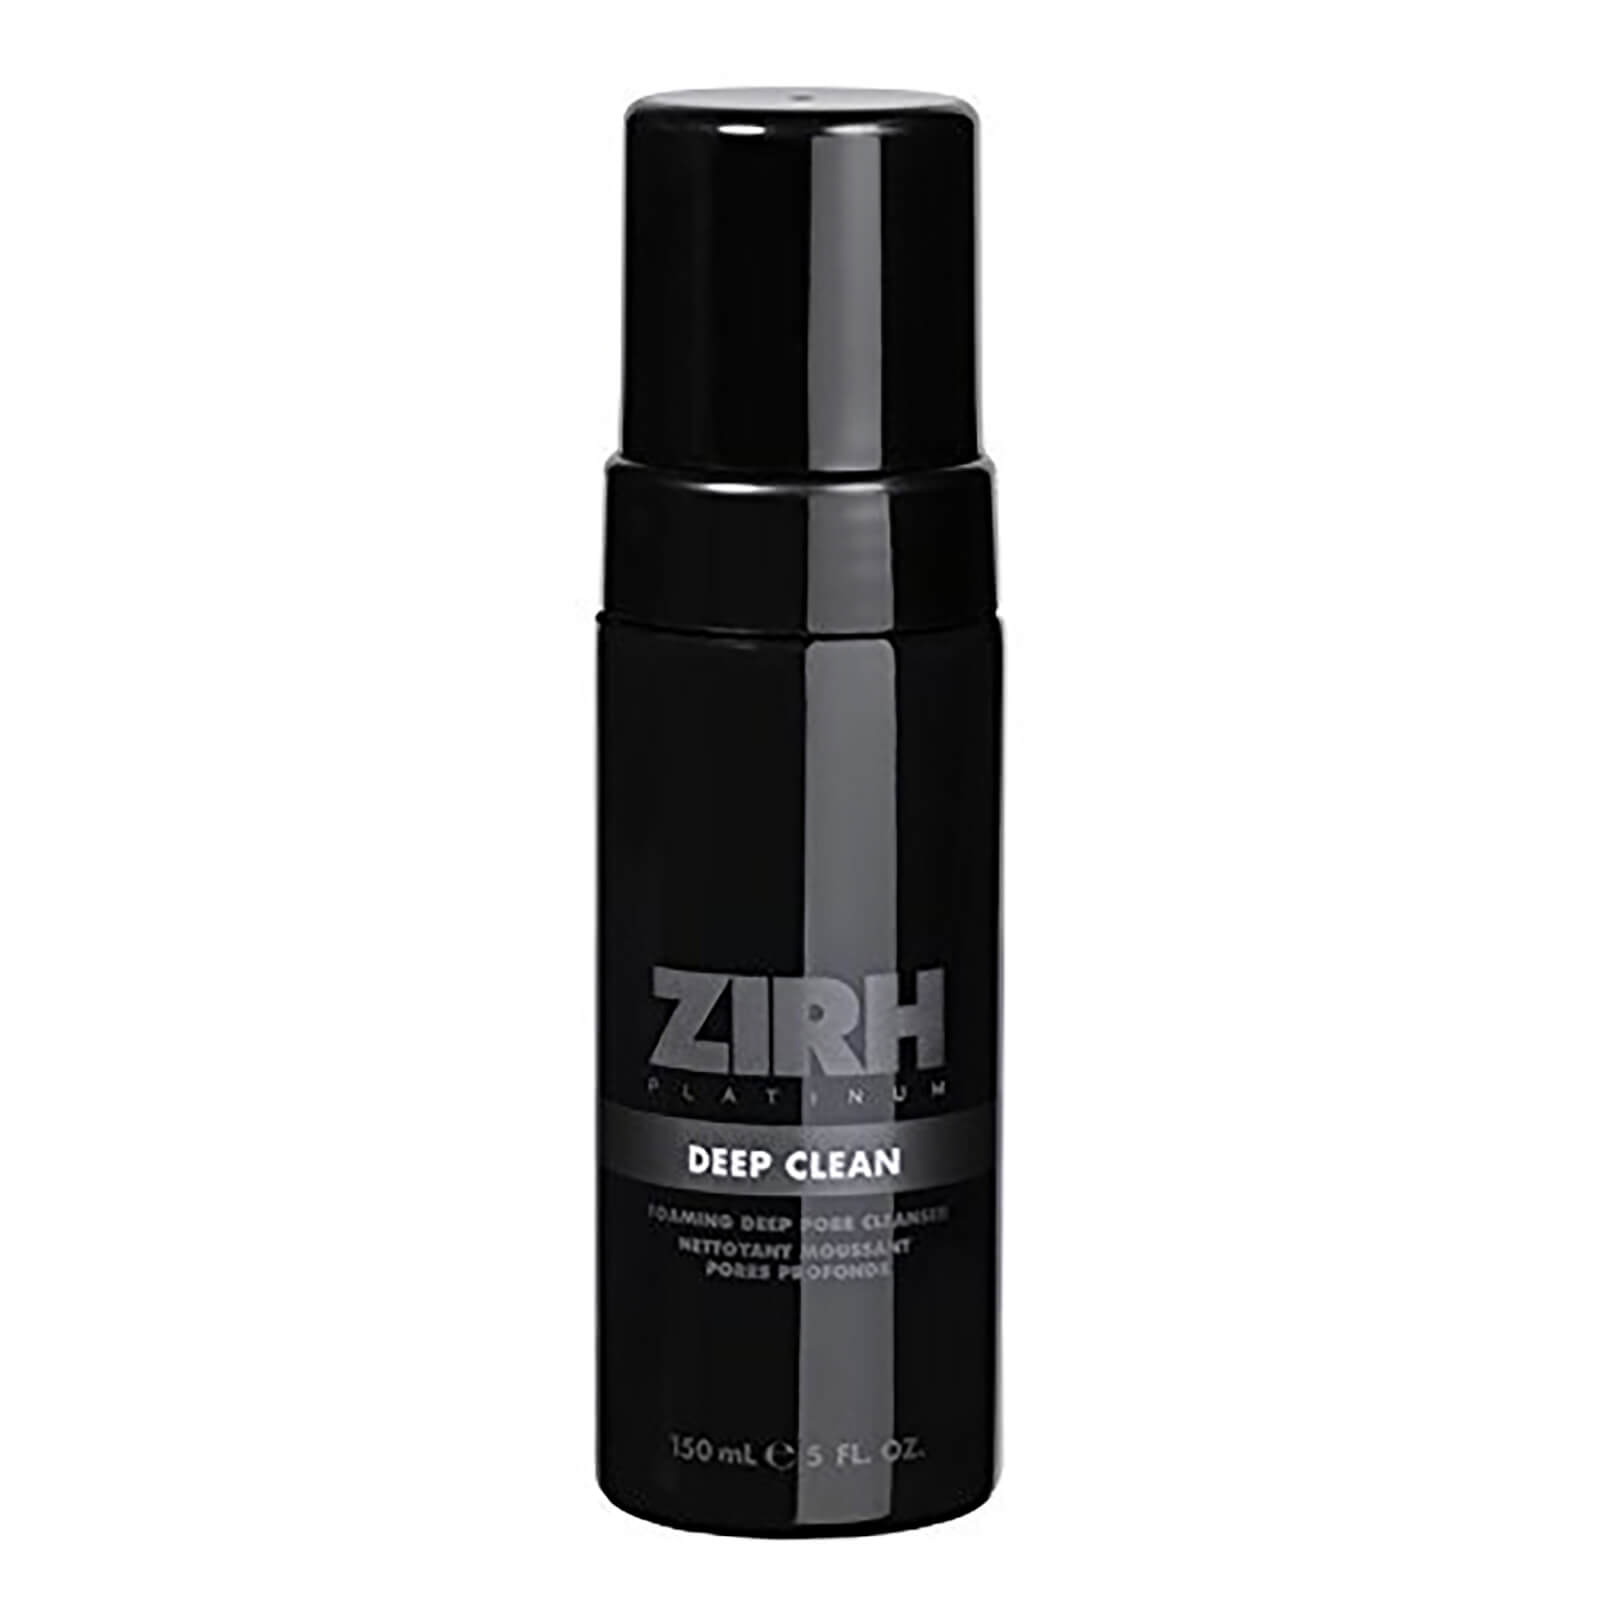 Zirh Platinum Deep Clean Deep Pore Foaming Cleanser 150ml